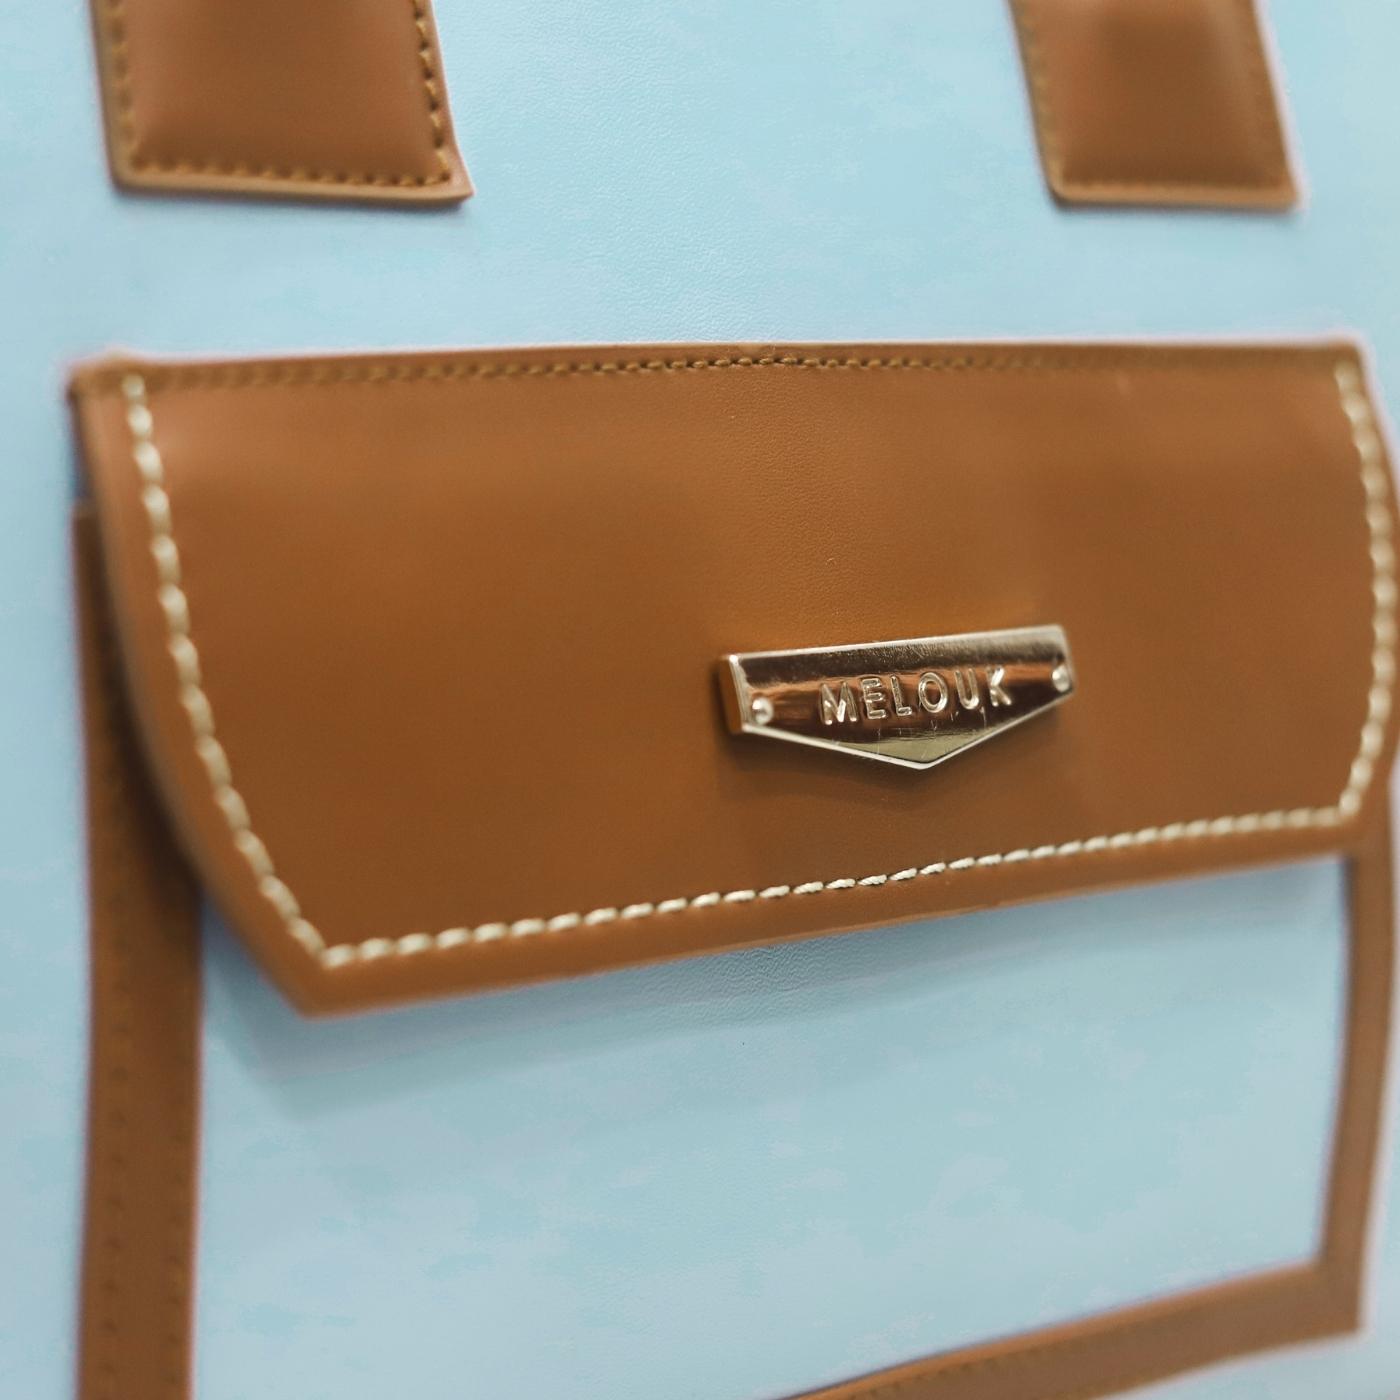 Light Blue Embossed Leather Shoulder Bag with Details